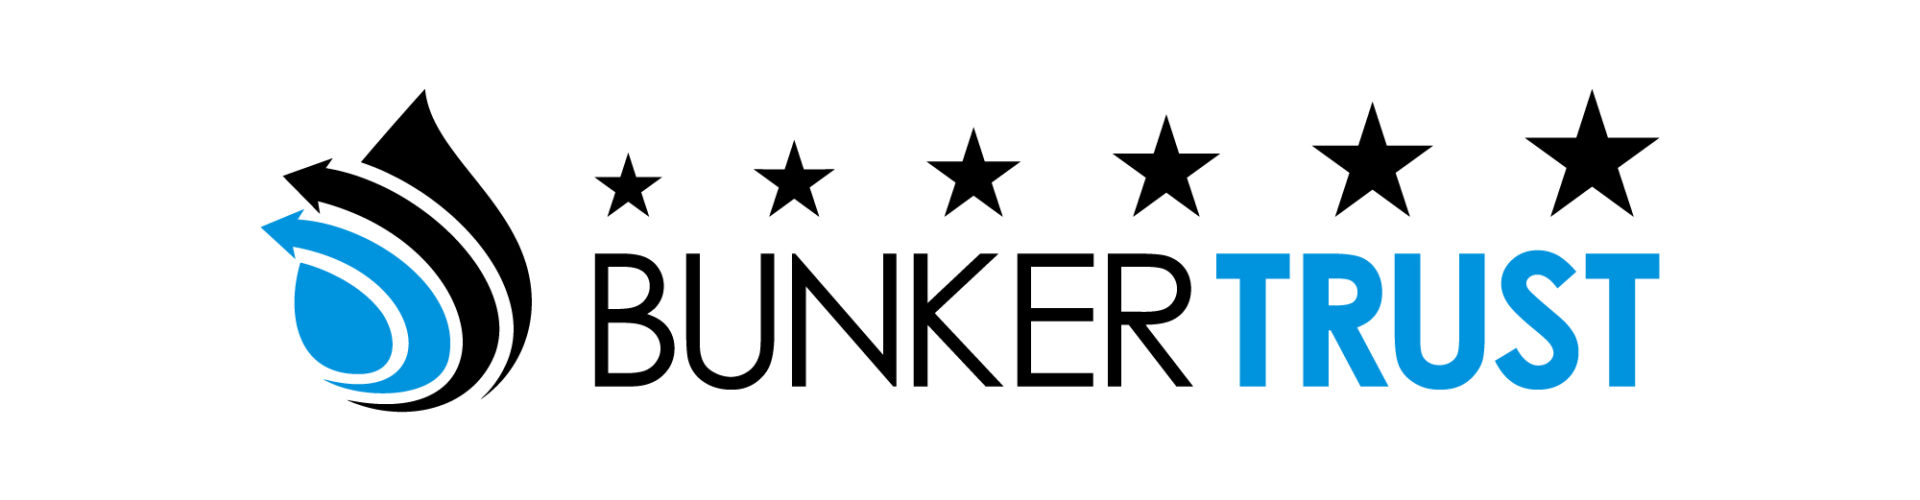 bunkertrust-logo1